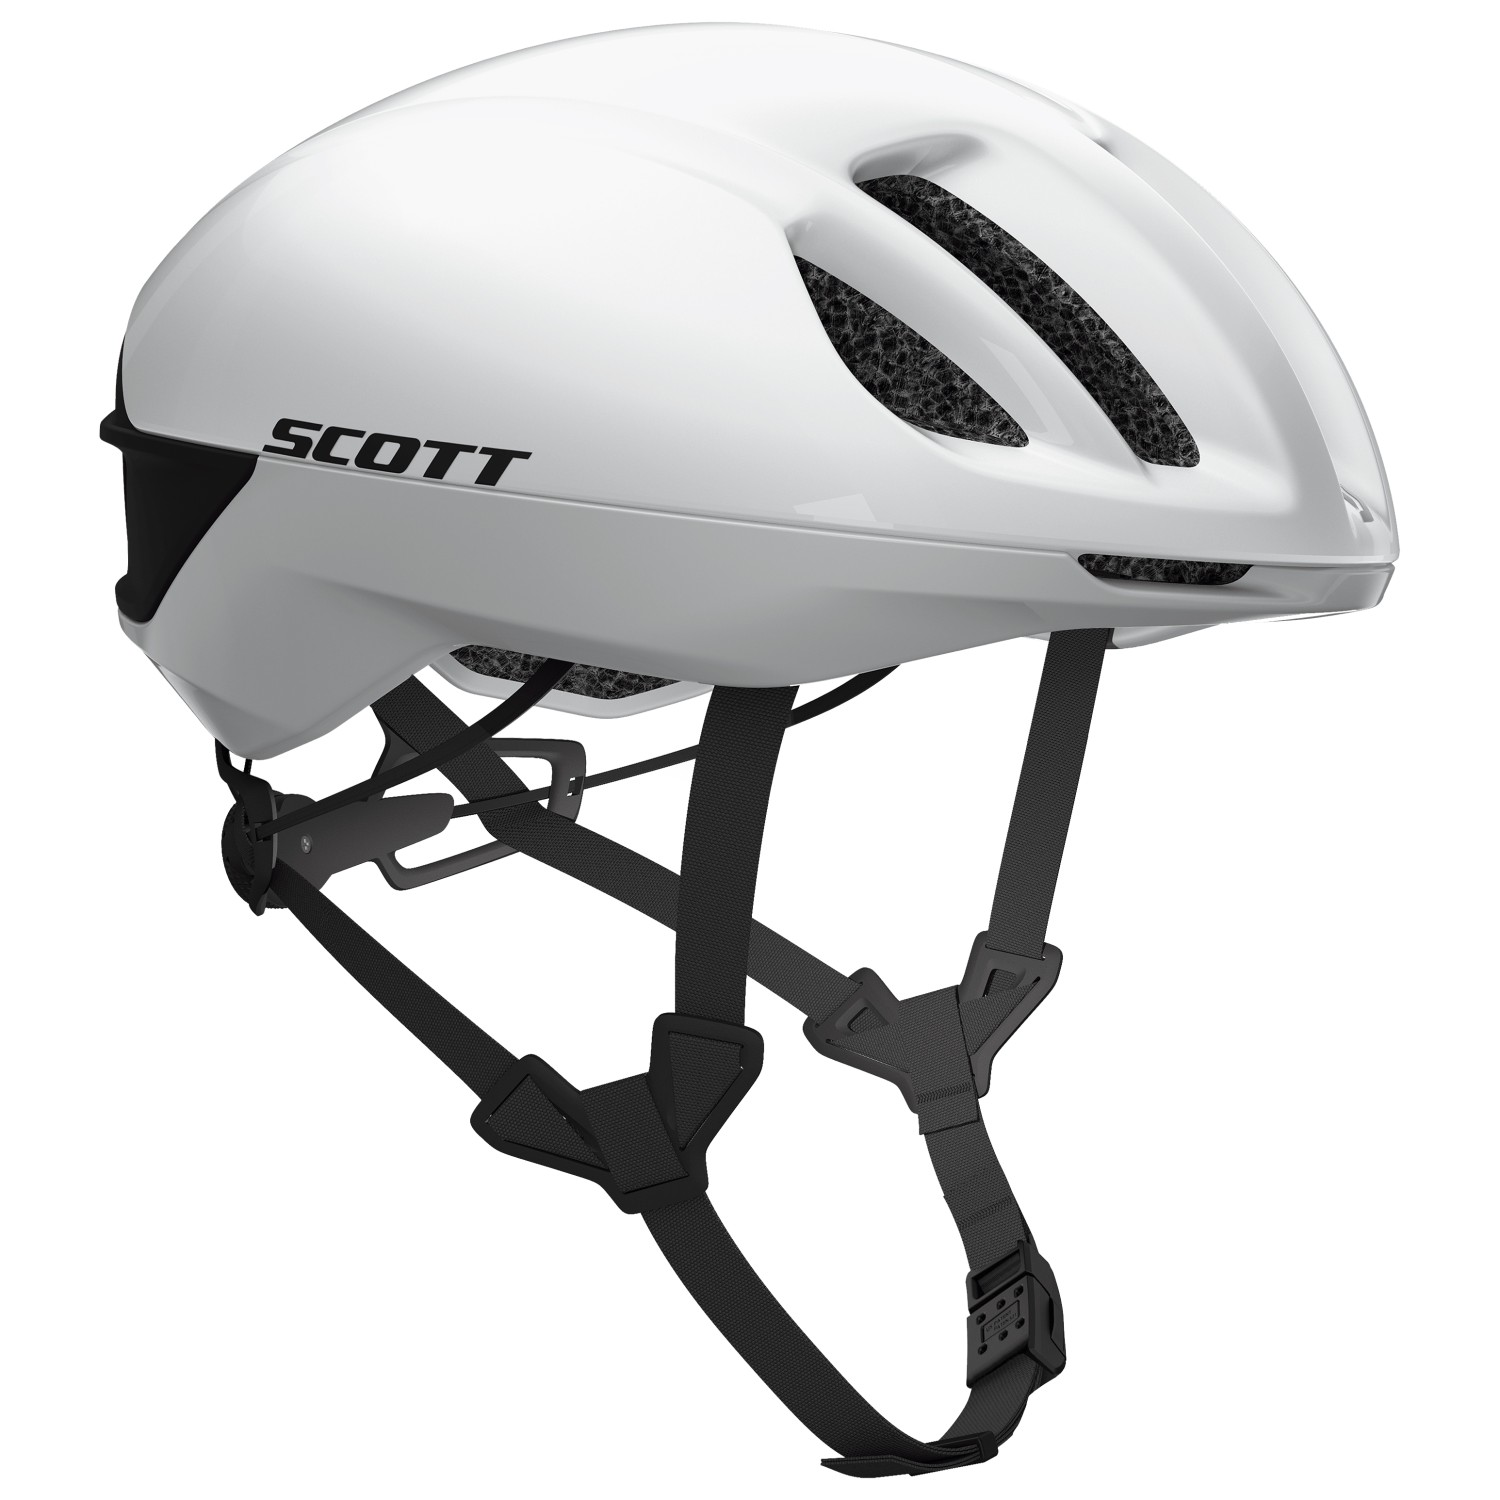 Велосипедный шлем Scott Cadence Plus, цвет White/Black scott шлем scott il doppio plus s 51 55 2101 pearl white